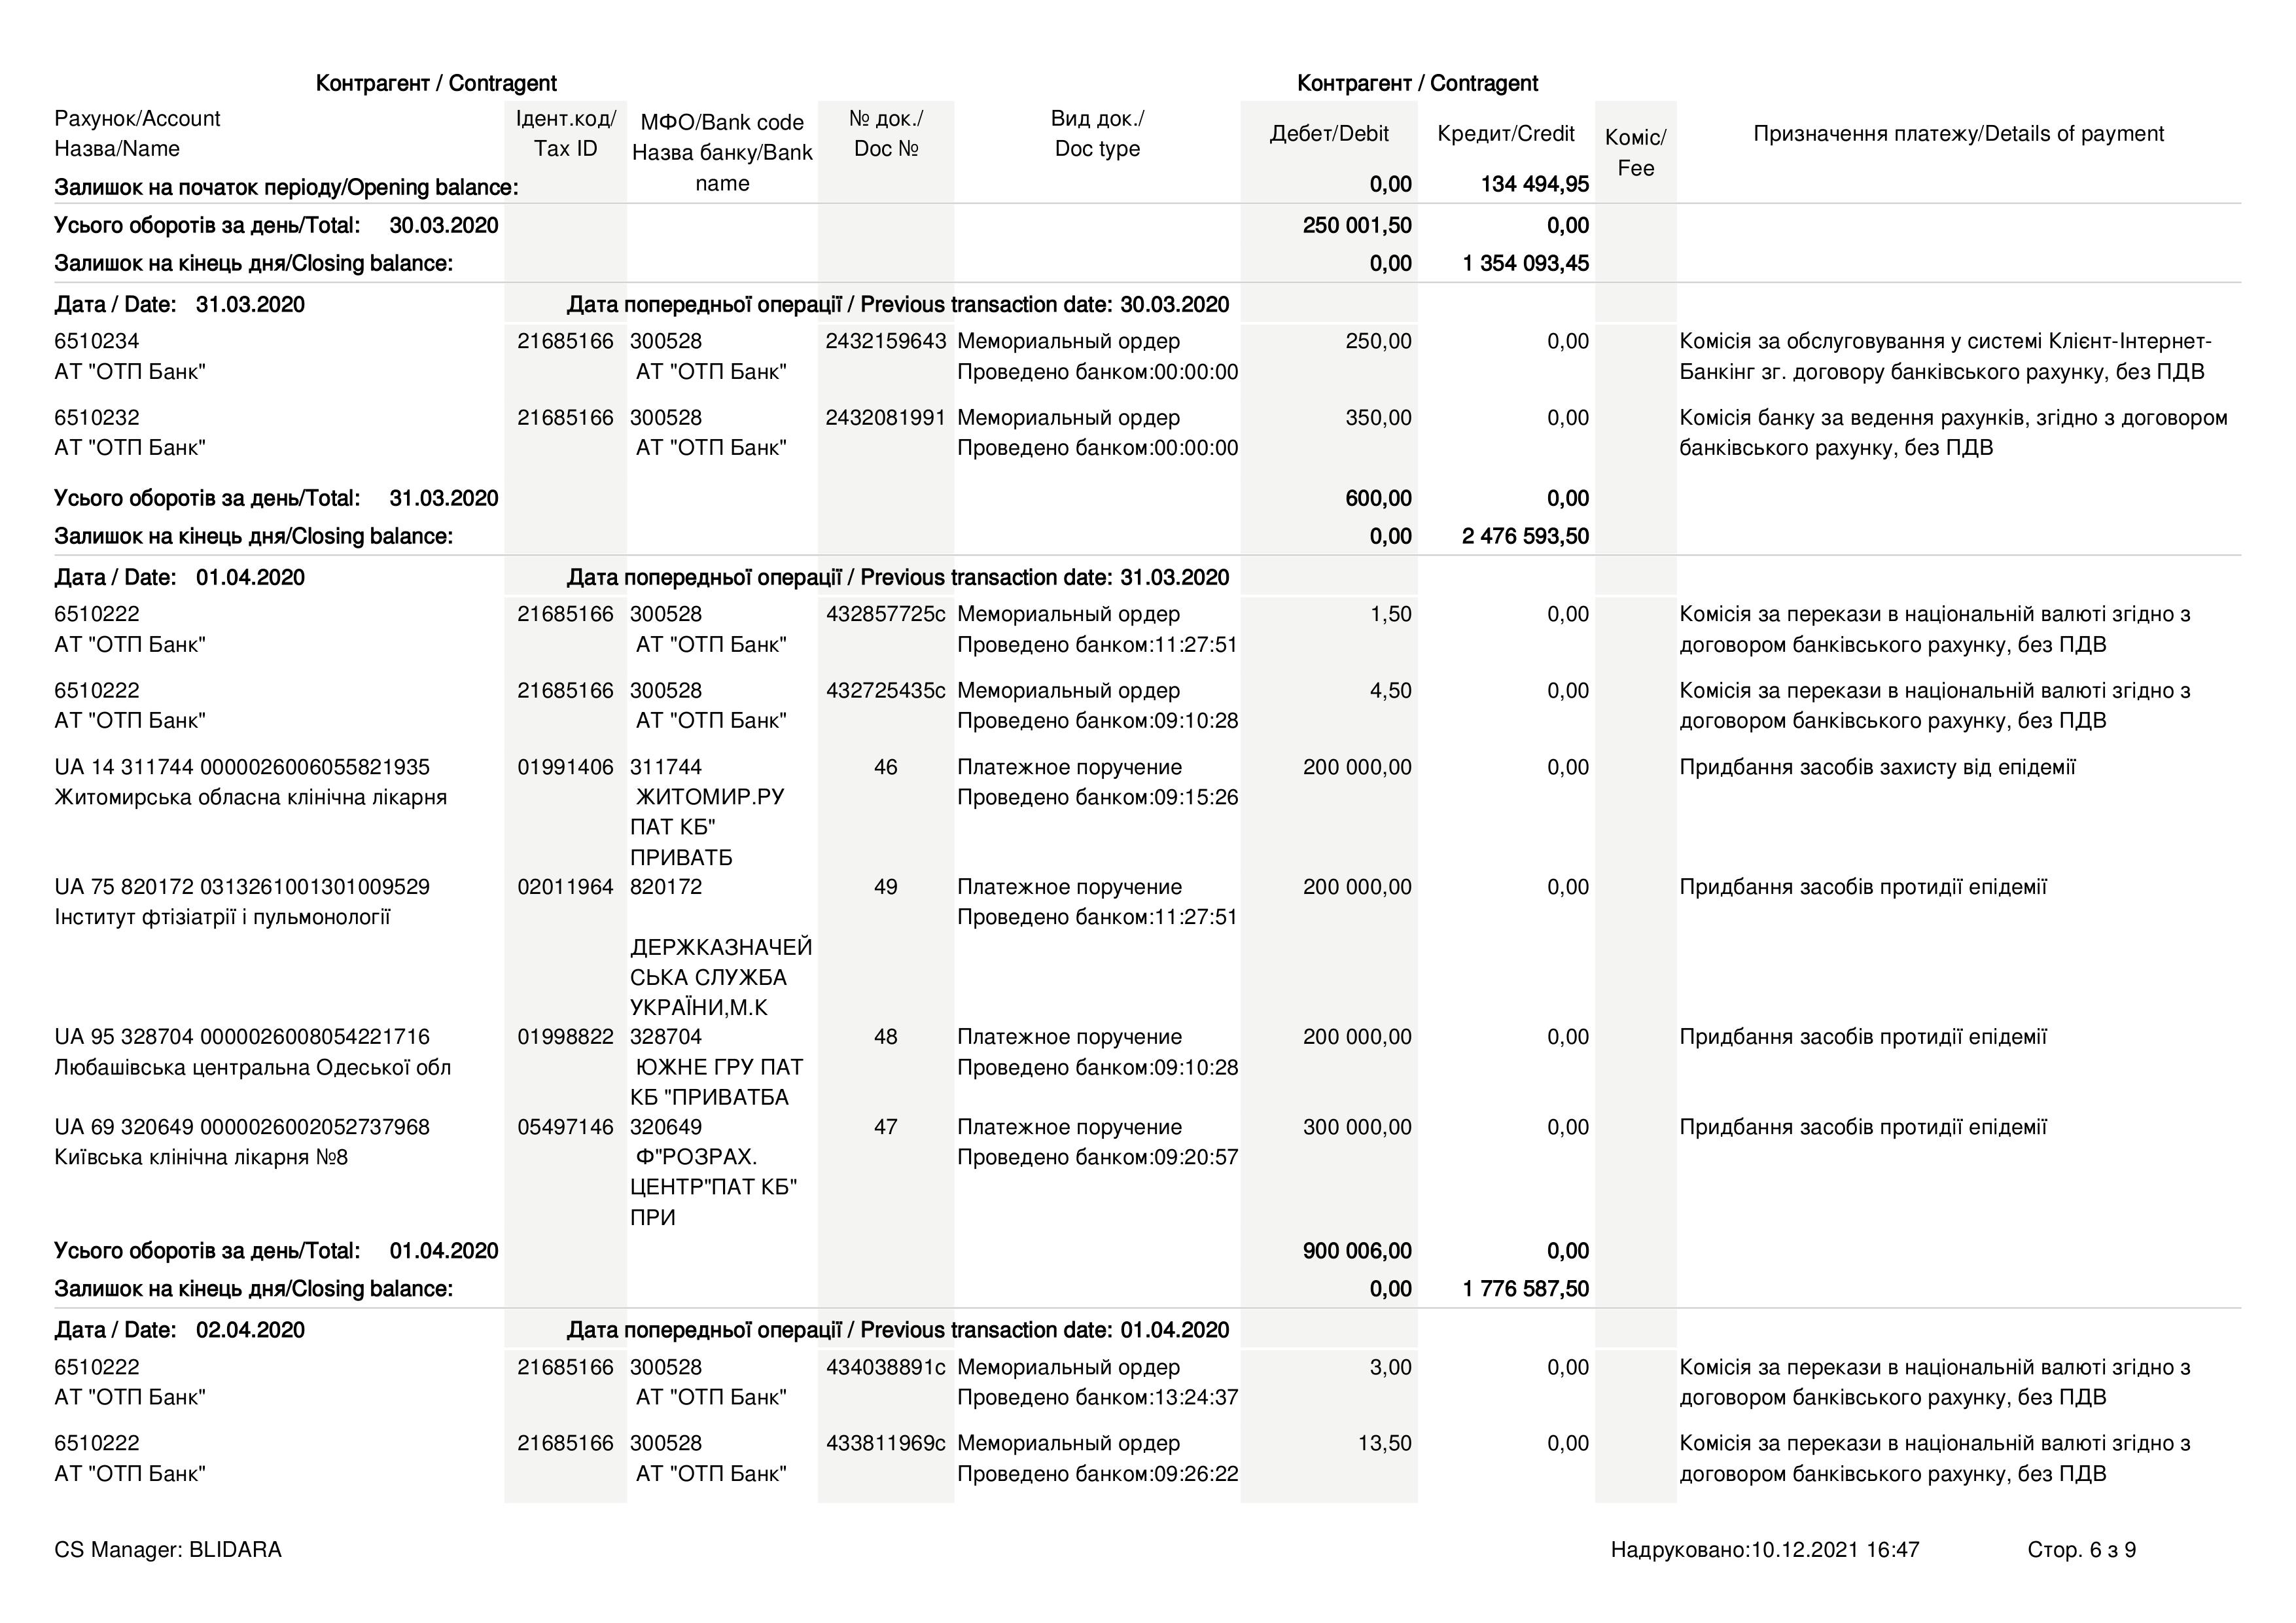 Благотворительный фонд Портнова, против которого США ввели санкции, потратил 13 миллионов на помощь больницам - фото 7